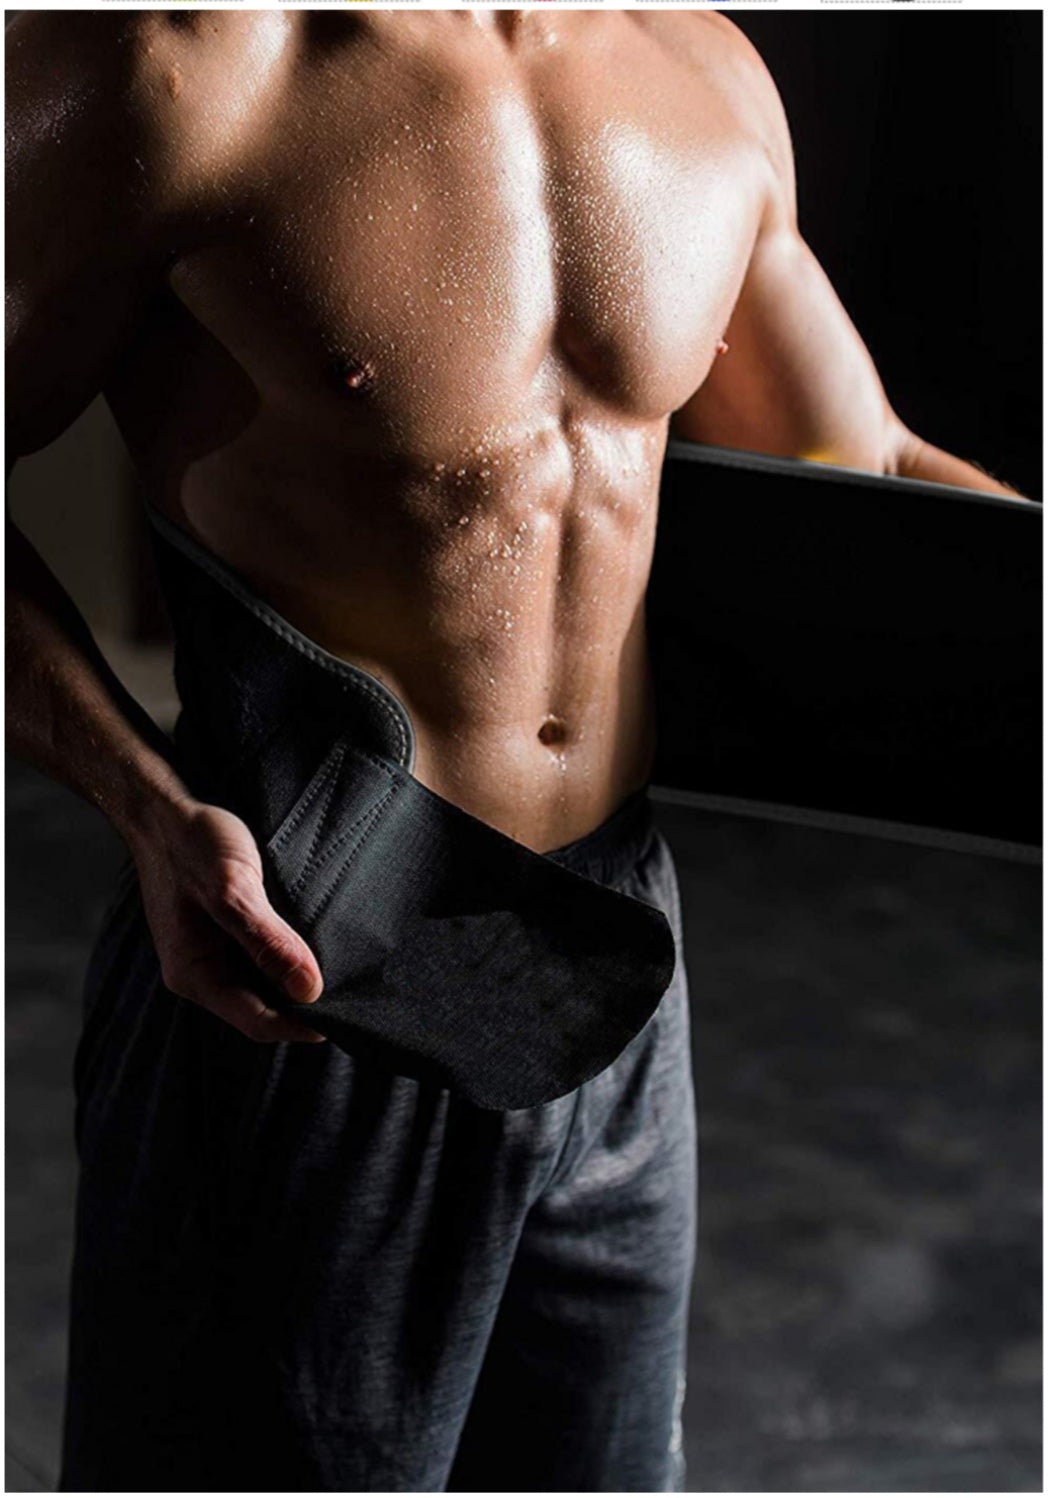 Sweat Belt for Men & Women – THEGSCLUB